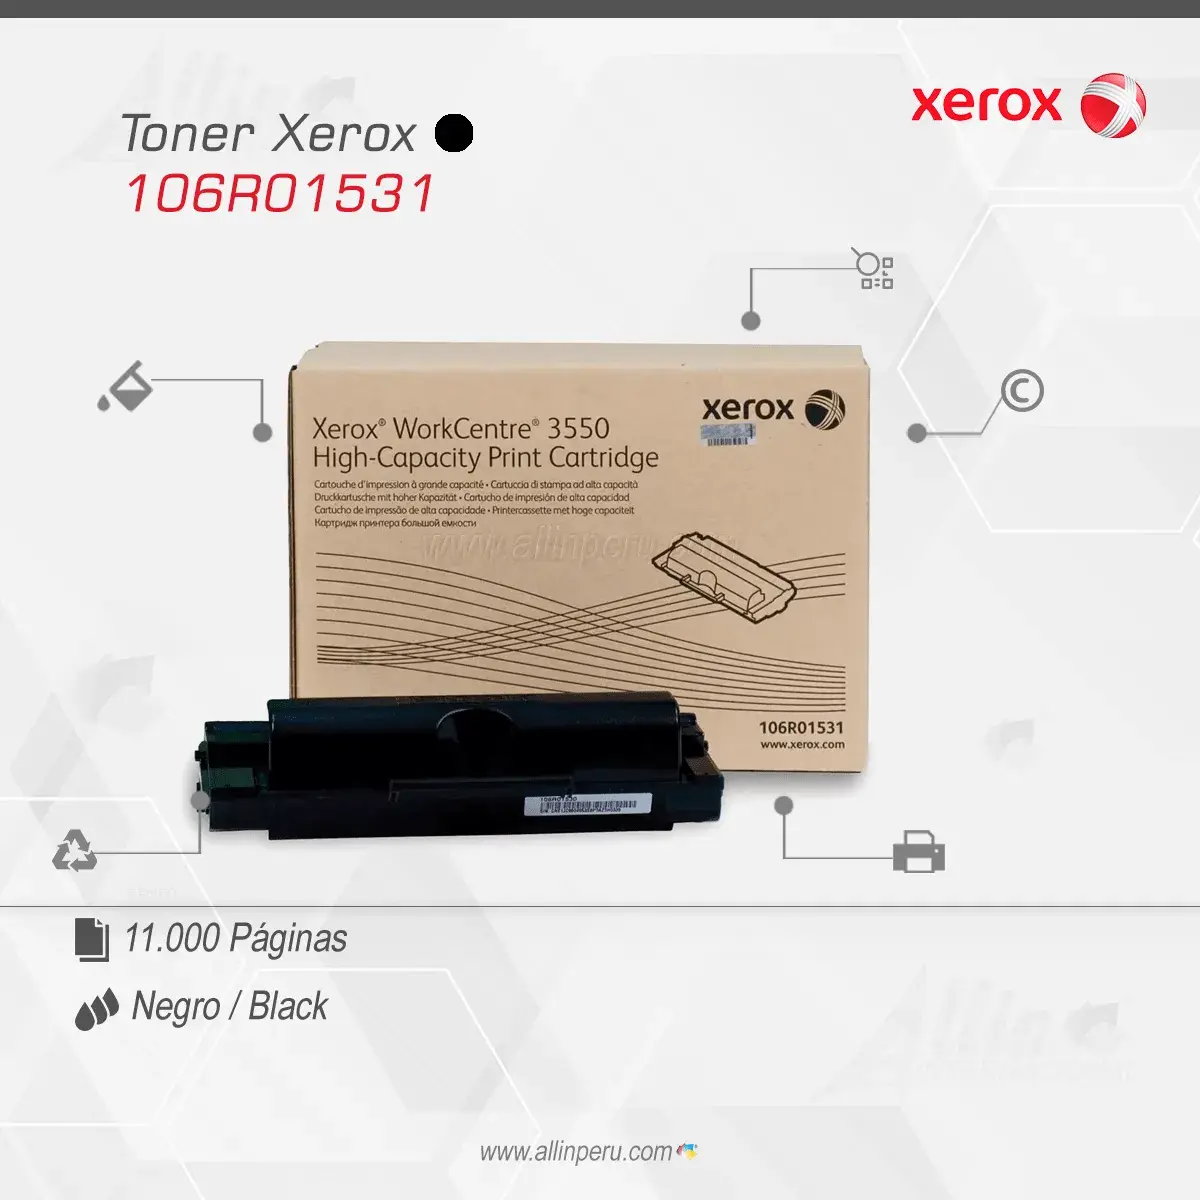 Tóner Xerox 106R01531 este cartucho está hecho para impresoras Workcentre 3550